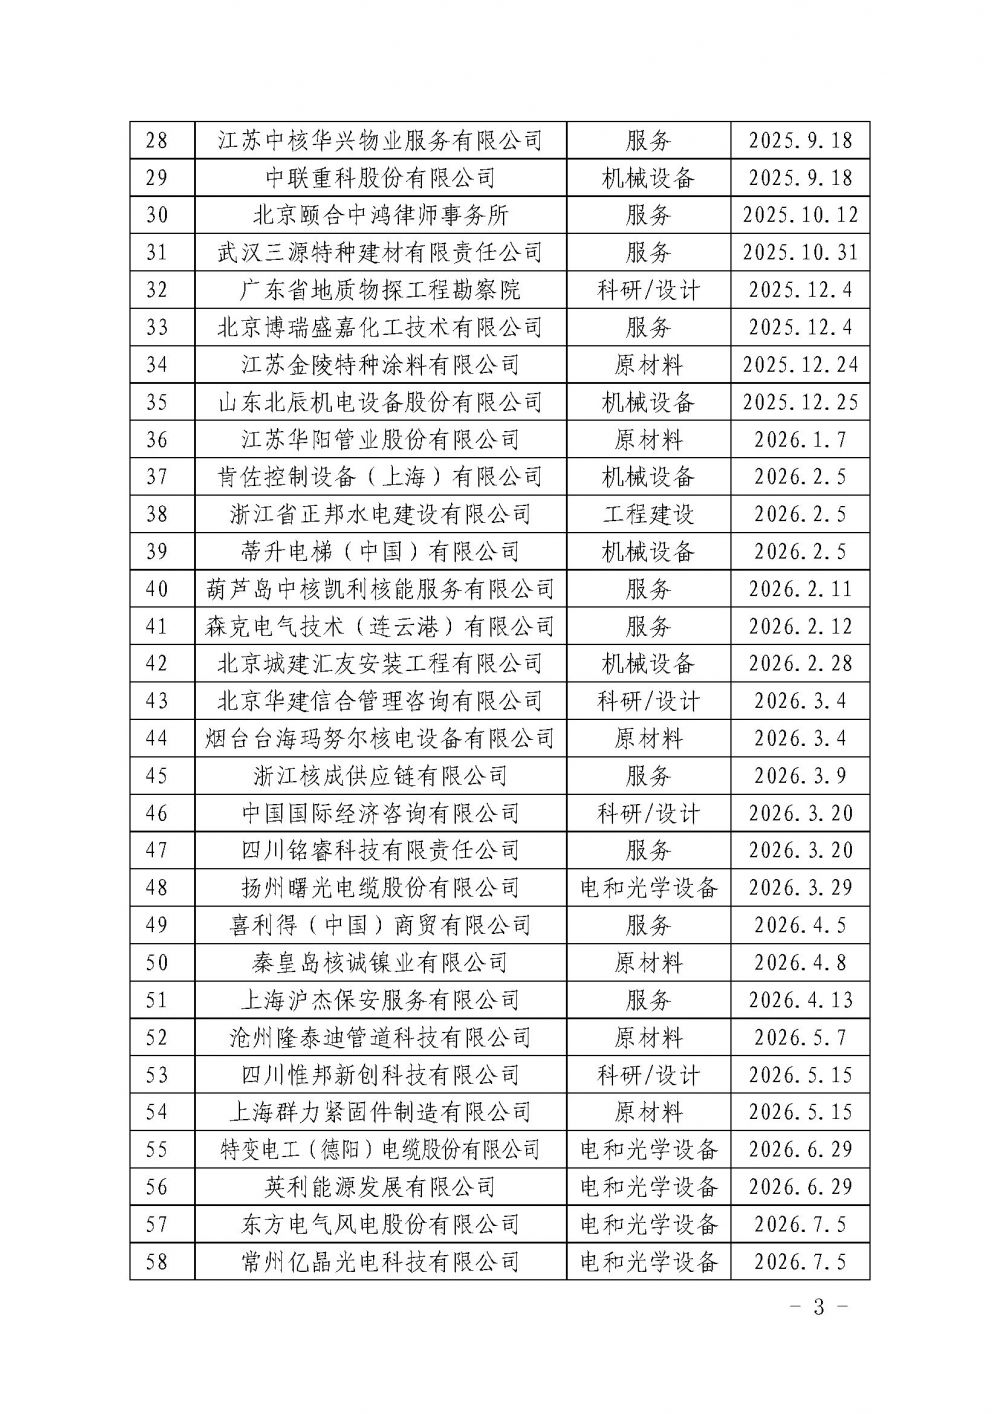 中国核能行业协会关于发布第二十九批核能行业合格供应商名录的公告_页面_3.jpg